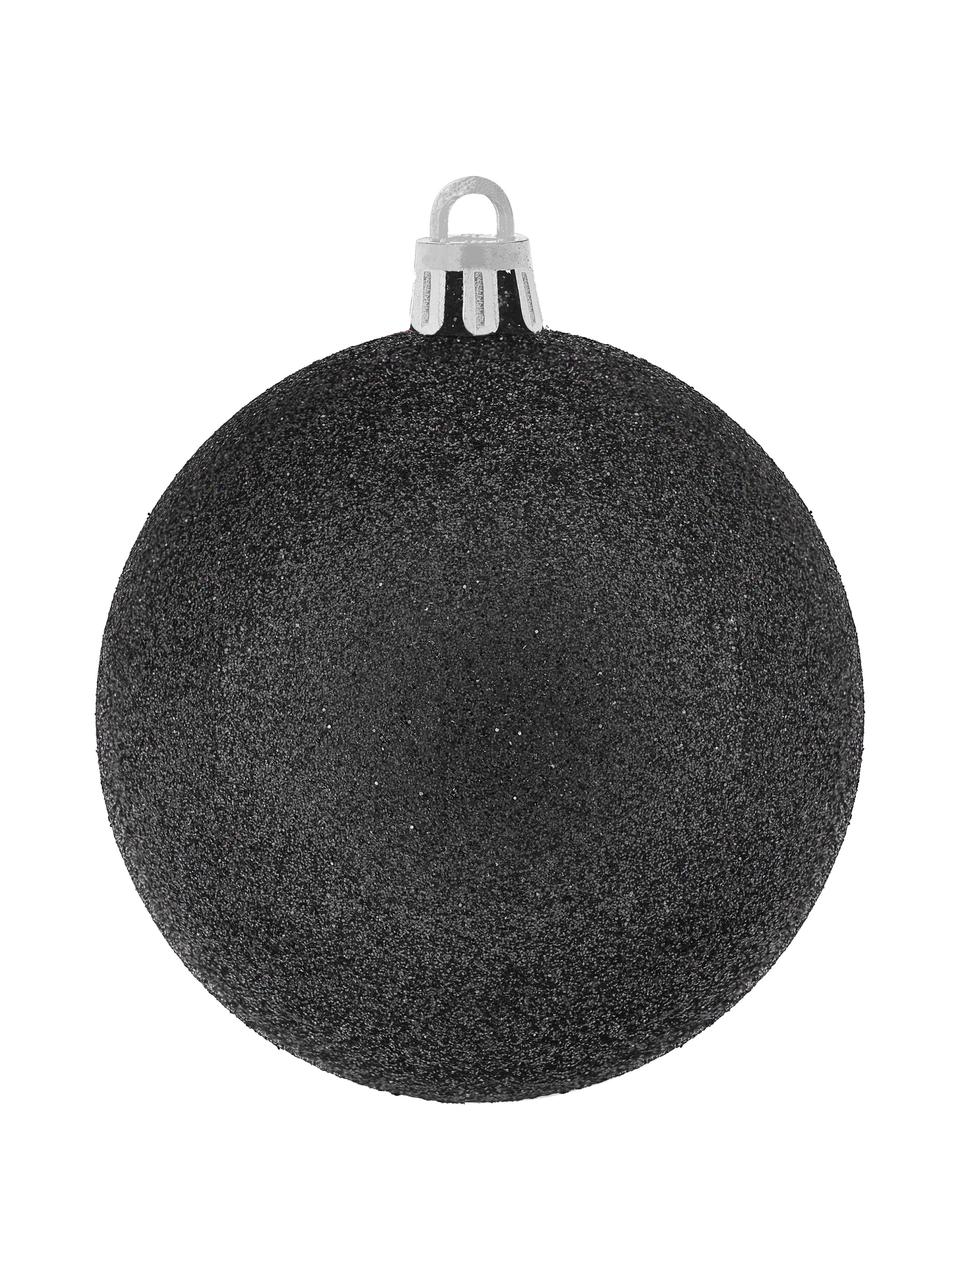 Breukvaste kerstballenset Victoria, 60 delig, Polystyreen, Zwart, zilverkleurig, Ø 7 cm